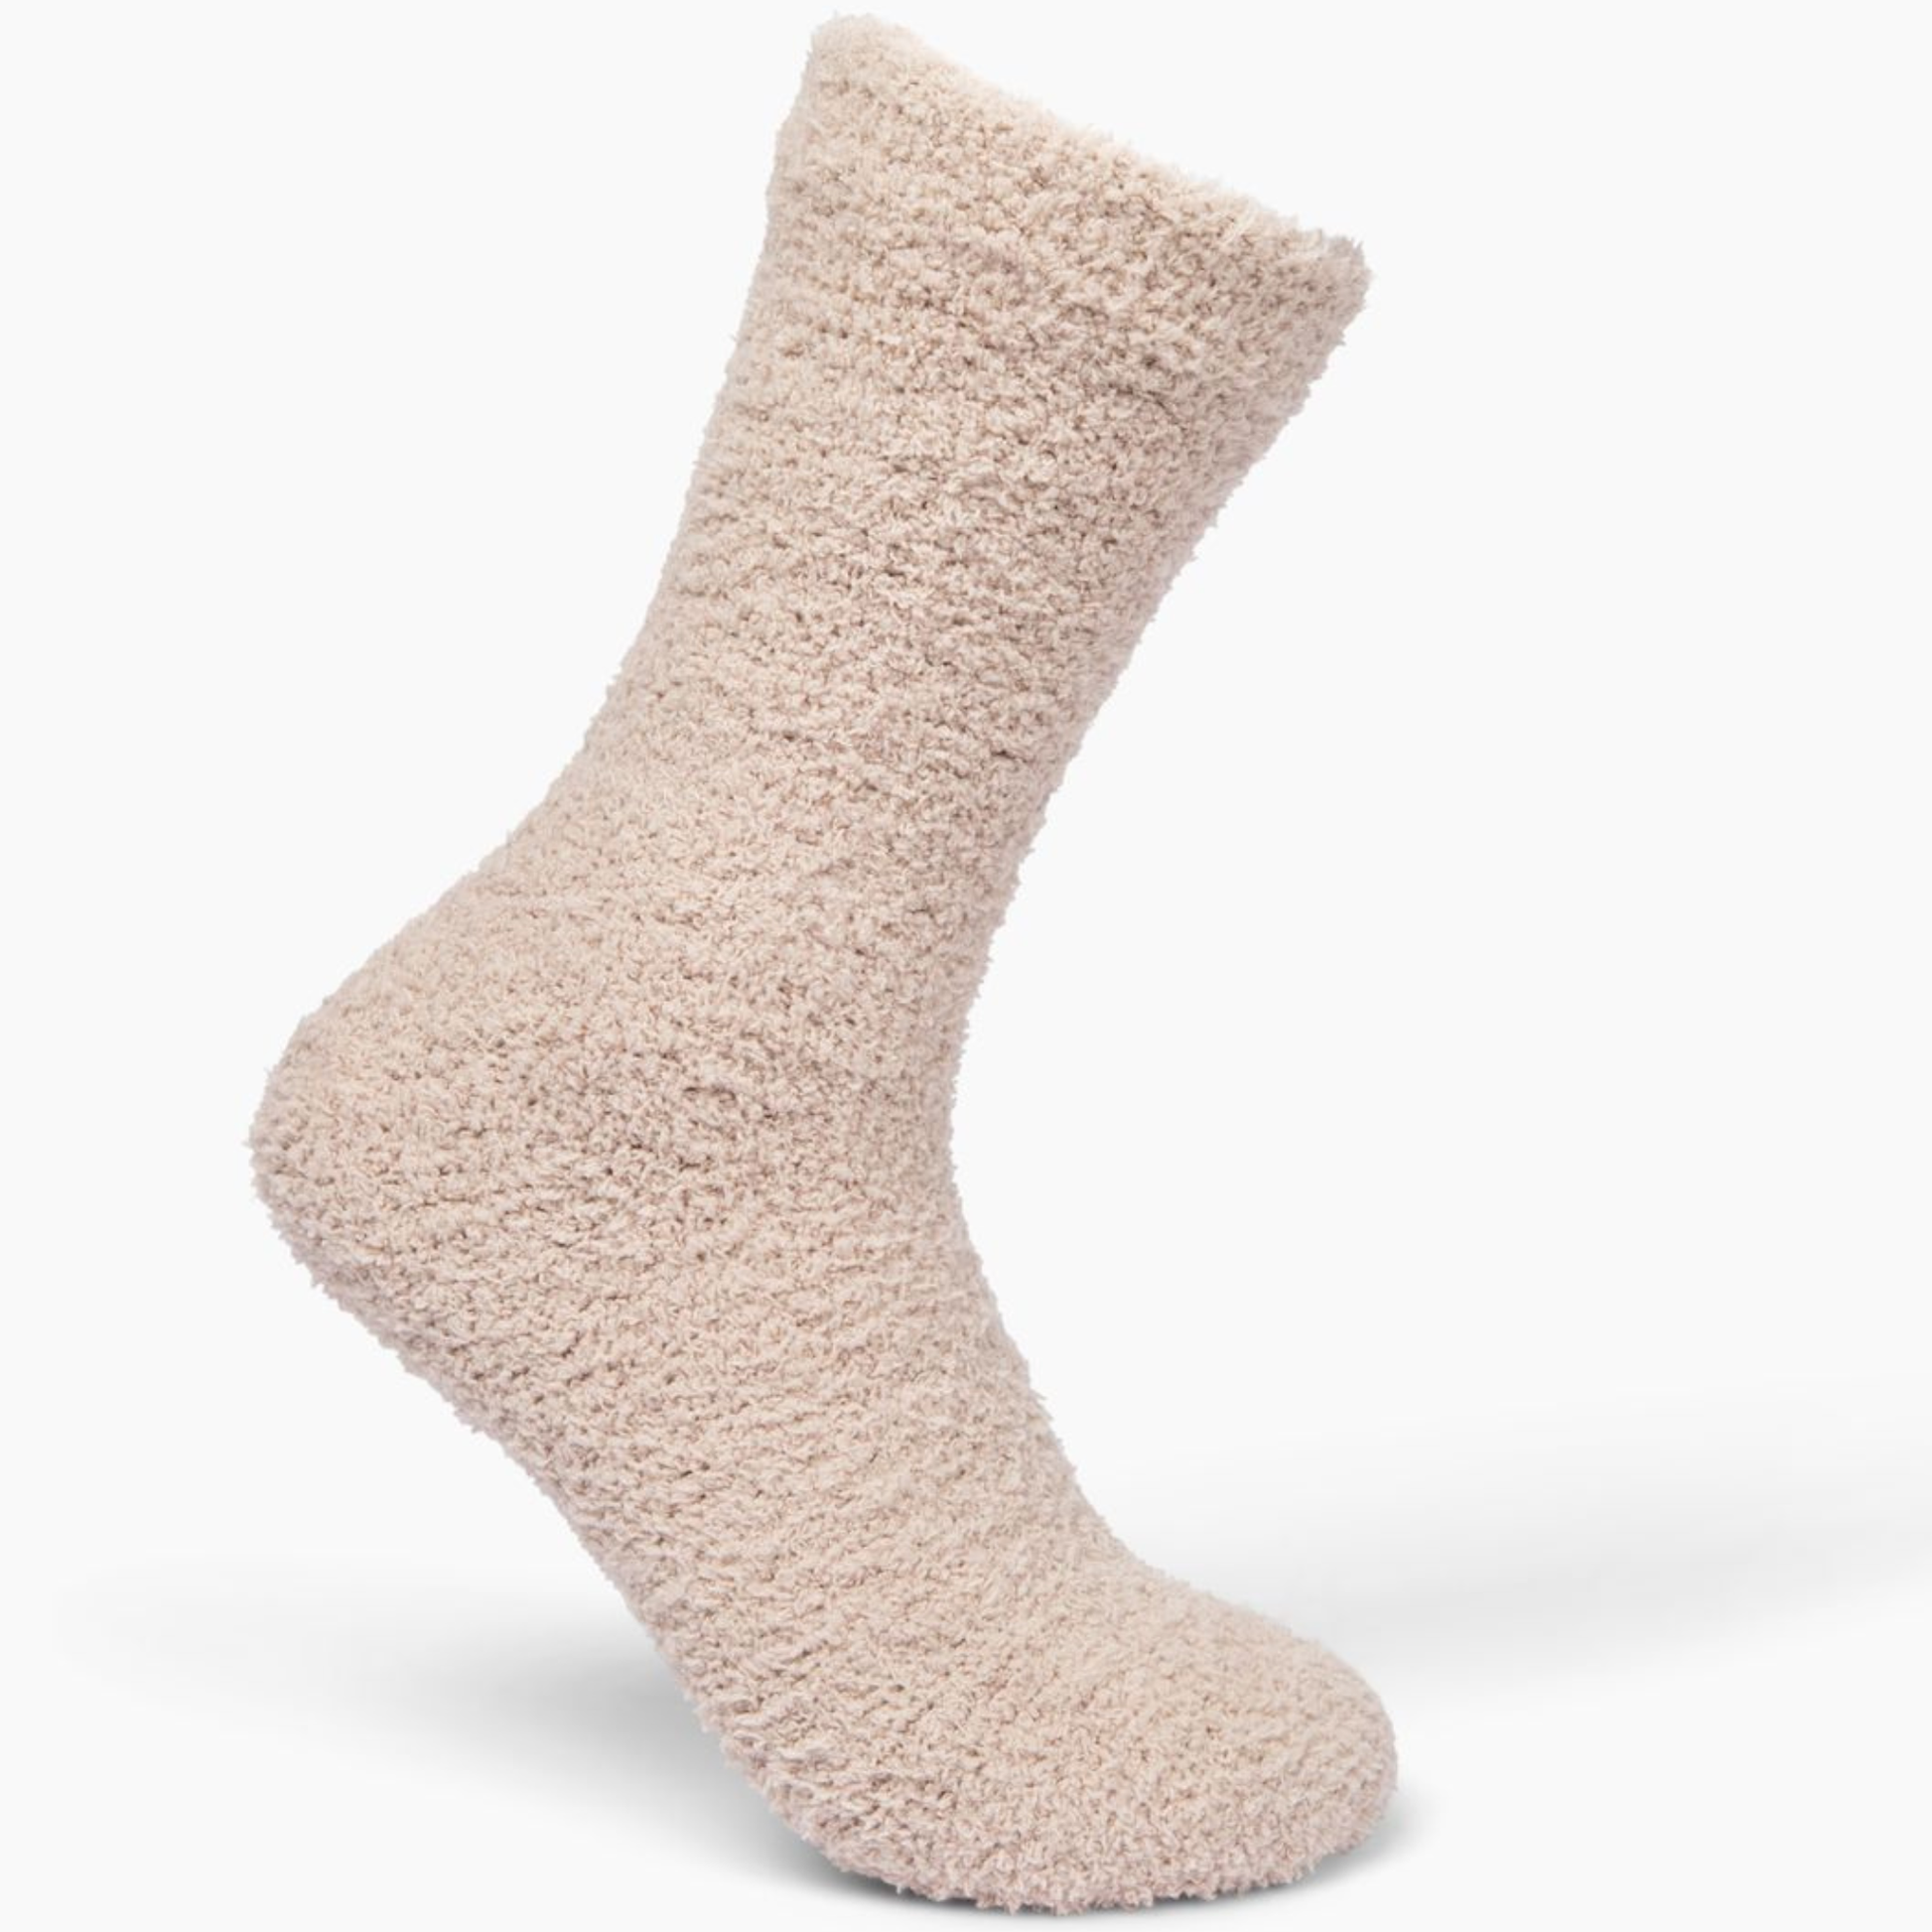 Cozy Cloud Socks - Ivory Fall-Winter Giften Market